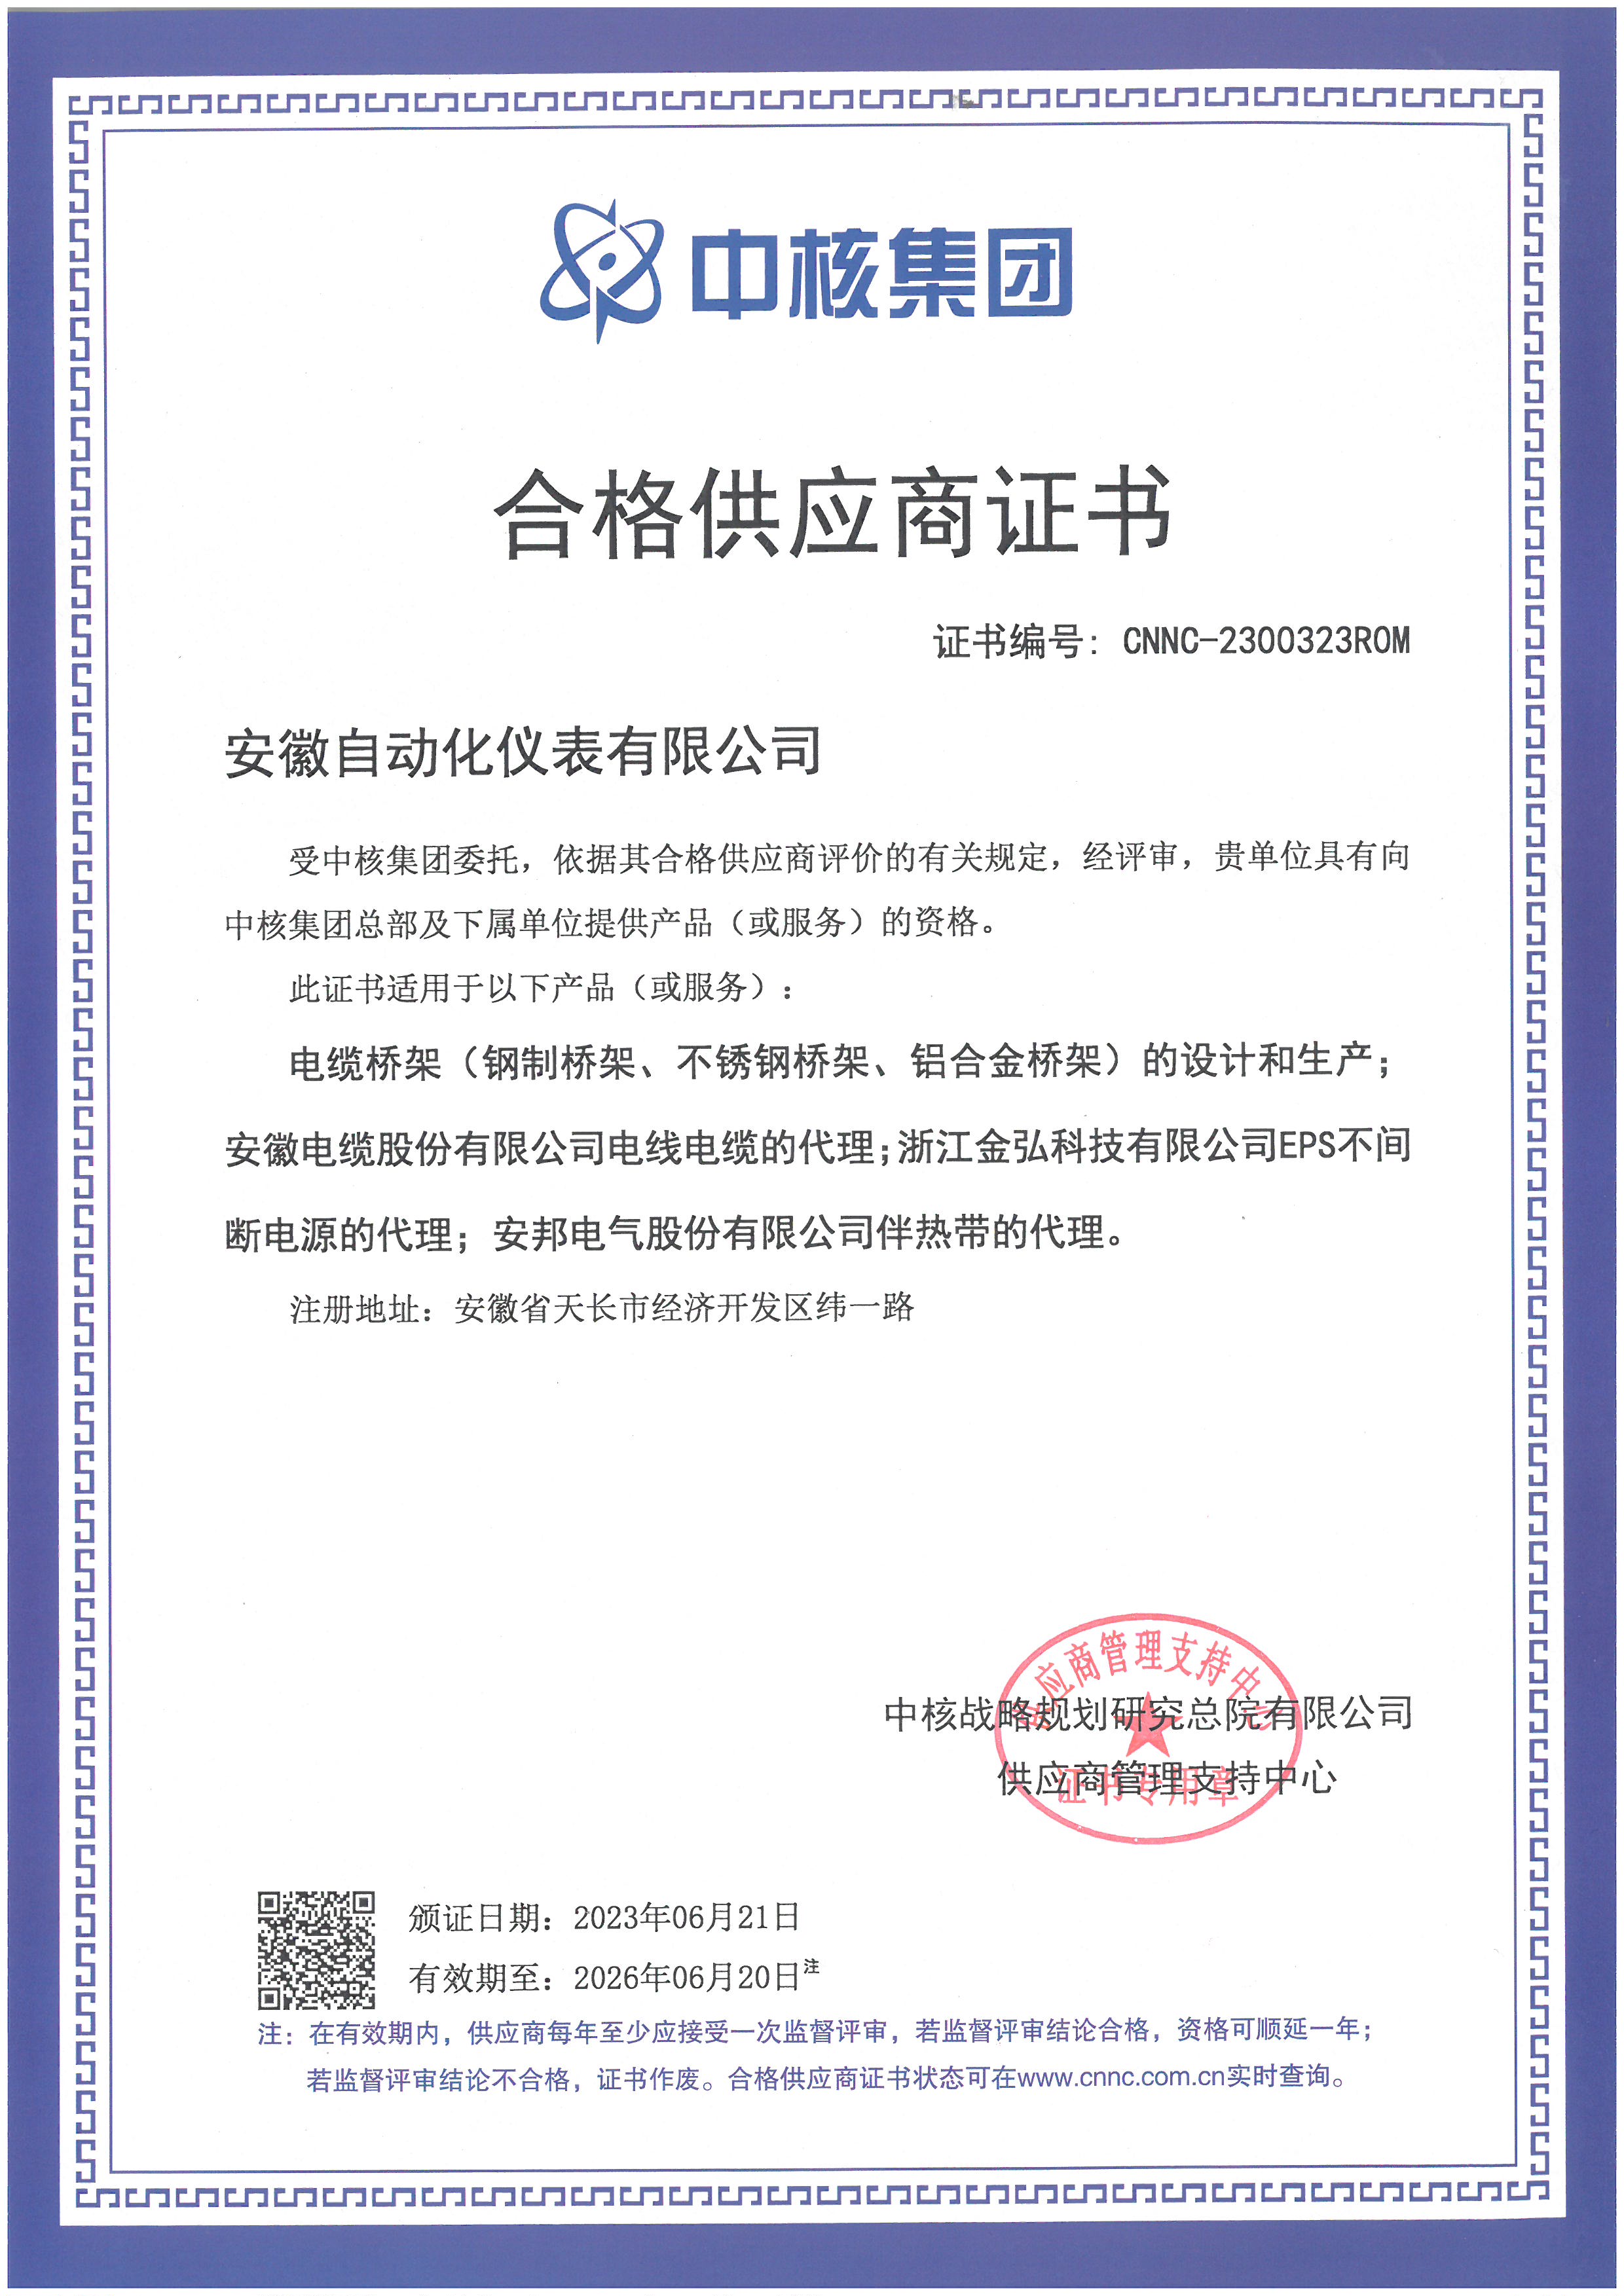 超級重磅！上海貫金儀表有限公司成功進入“中核集團合格供應商(shāng)”名錄，助力核電行業加速發展